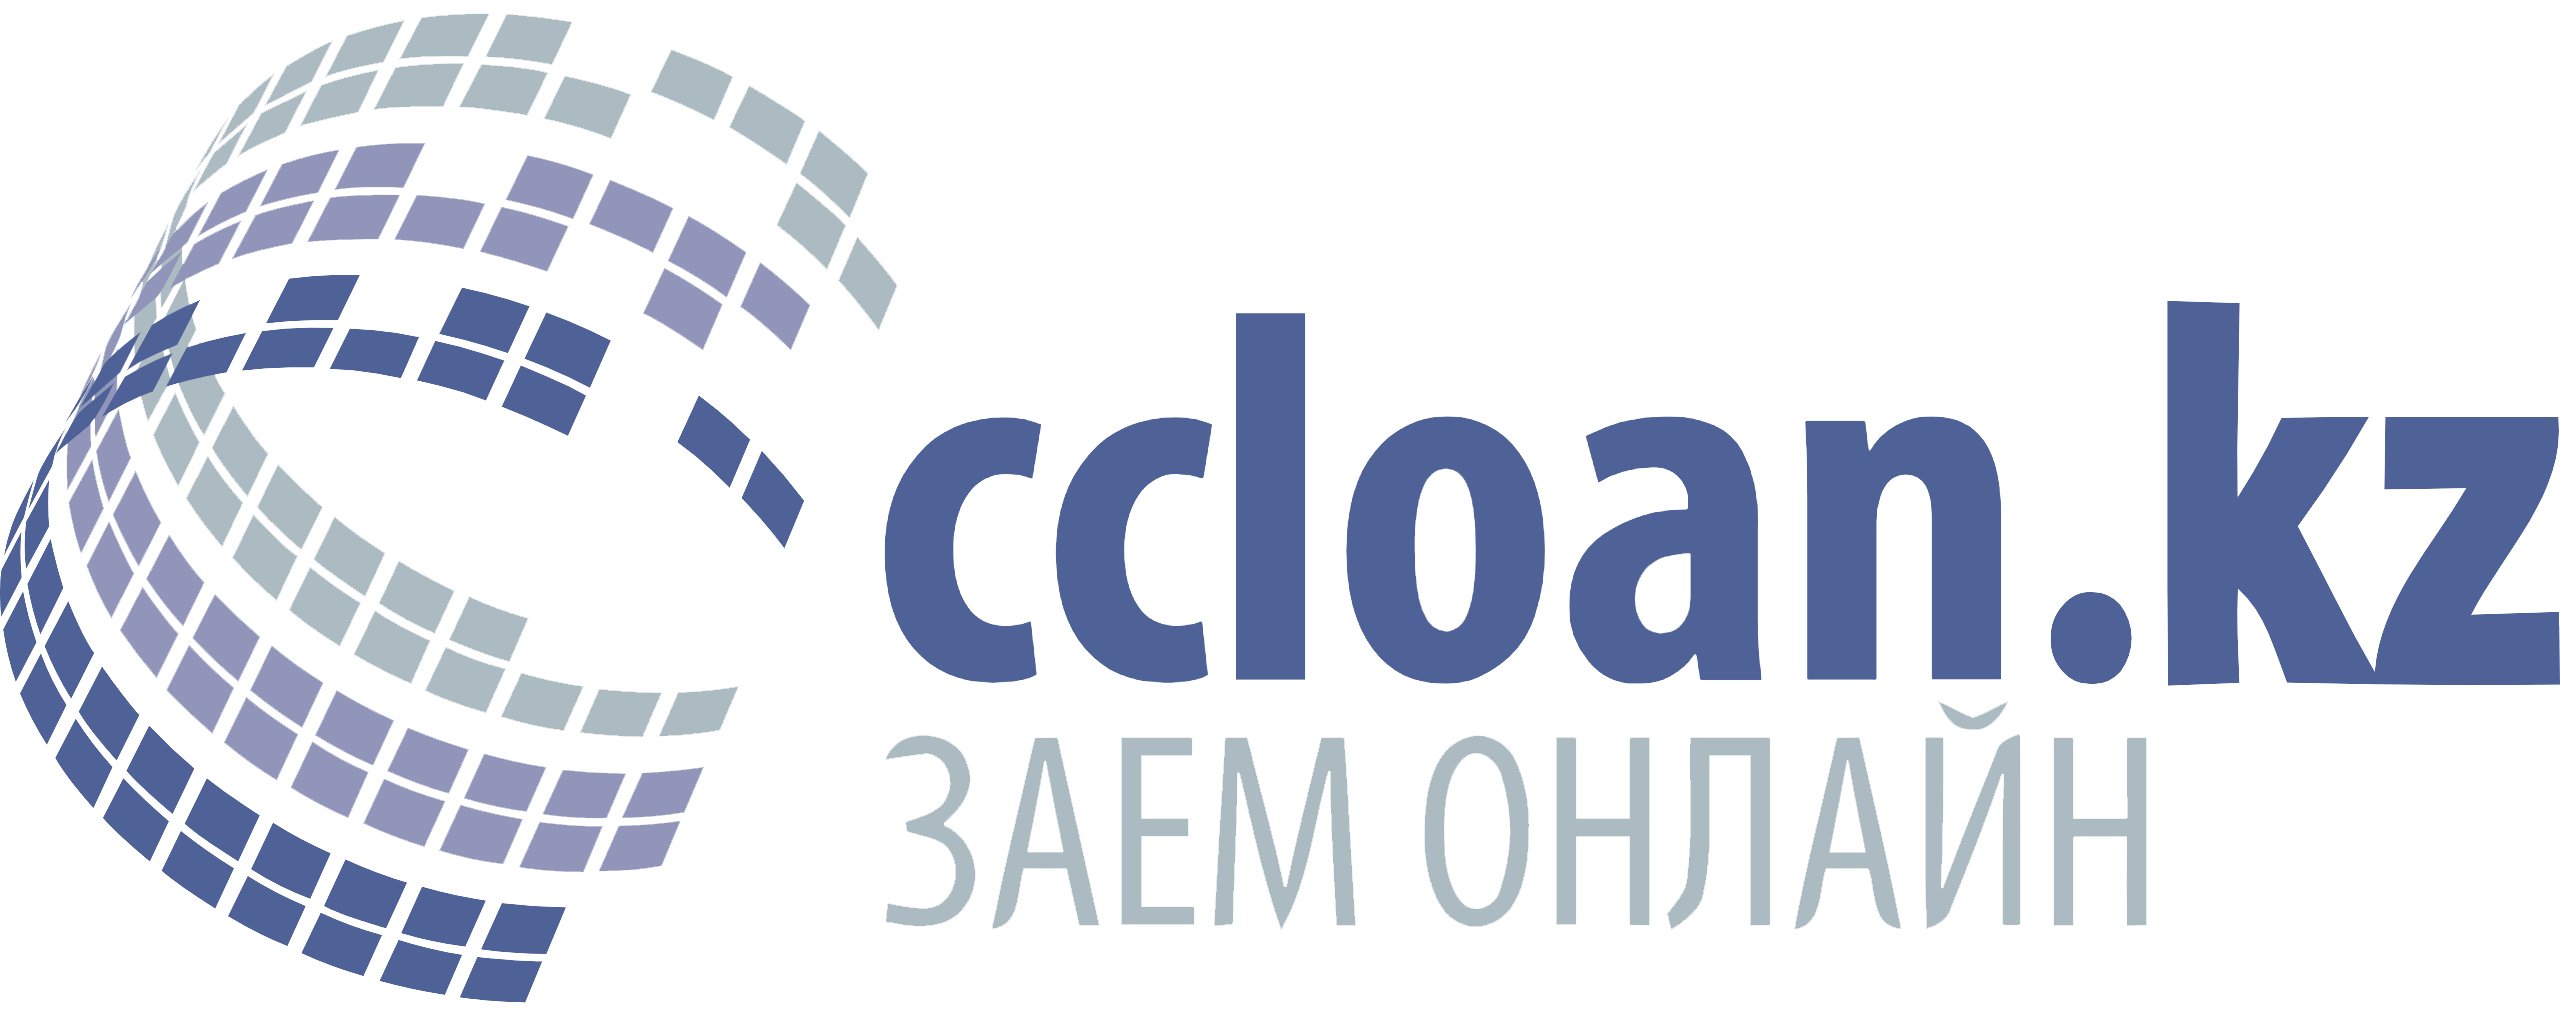 Логотип Микрофинансовой организации МФО Ccloan: беспроцентный микрозайм для новых клиентов